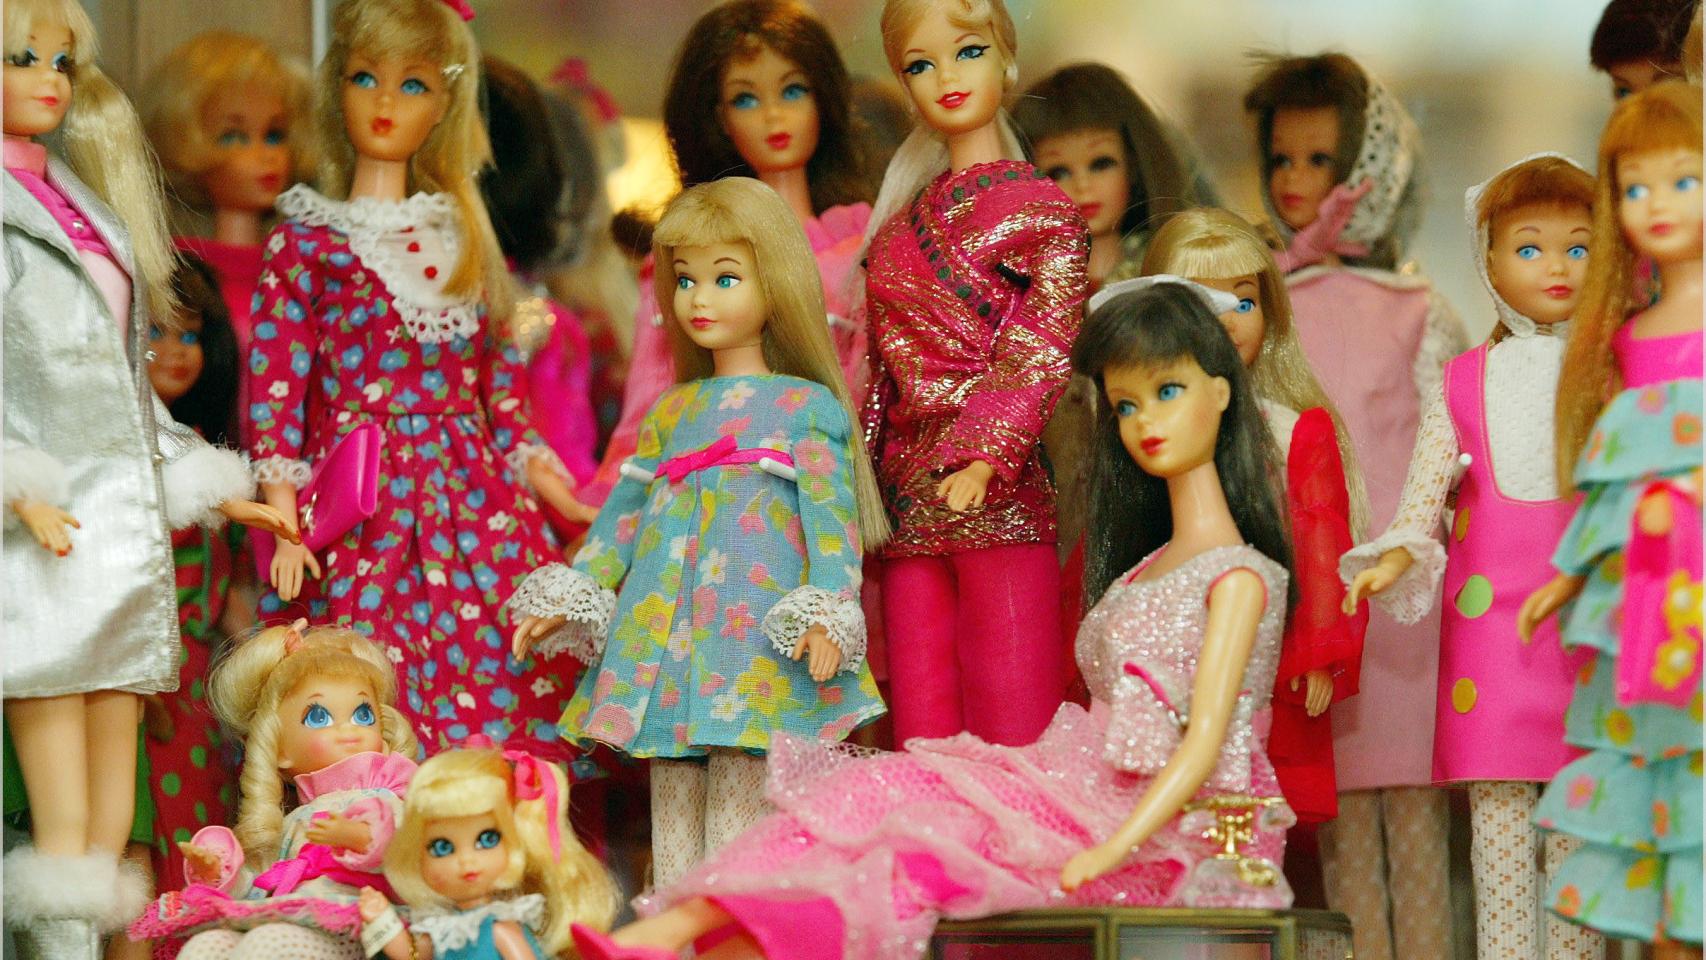 Exposición de muñecas Barbie en Düsseldorf, Alemania, en 2005.